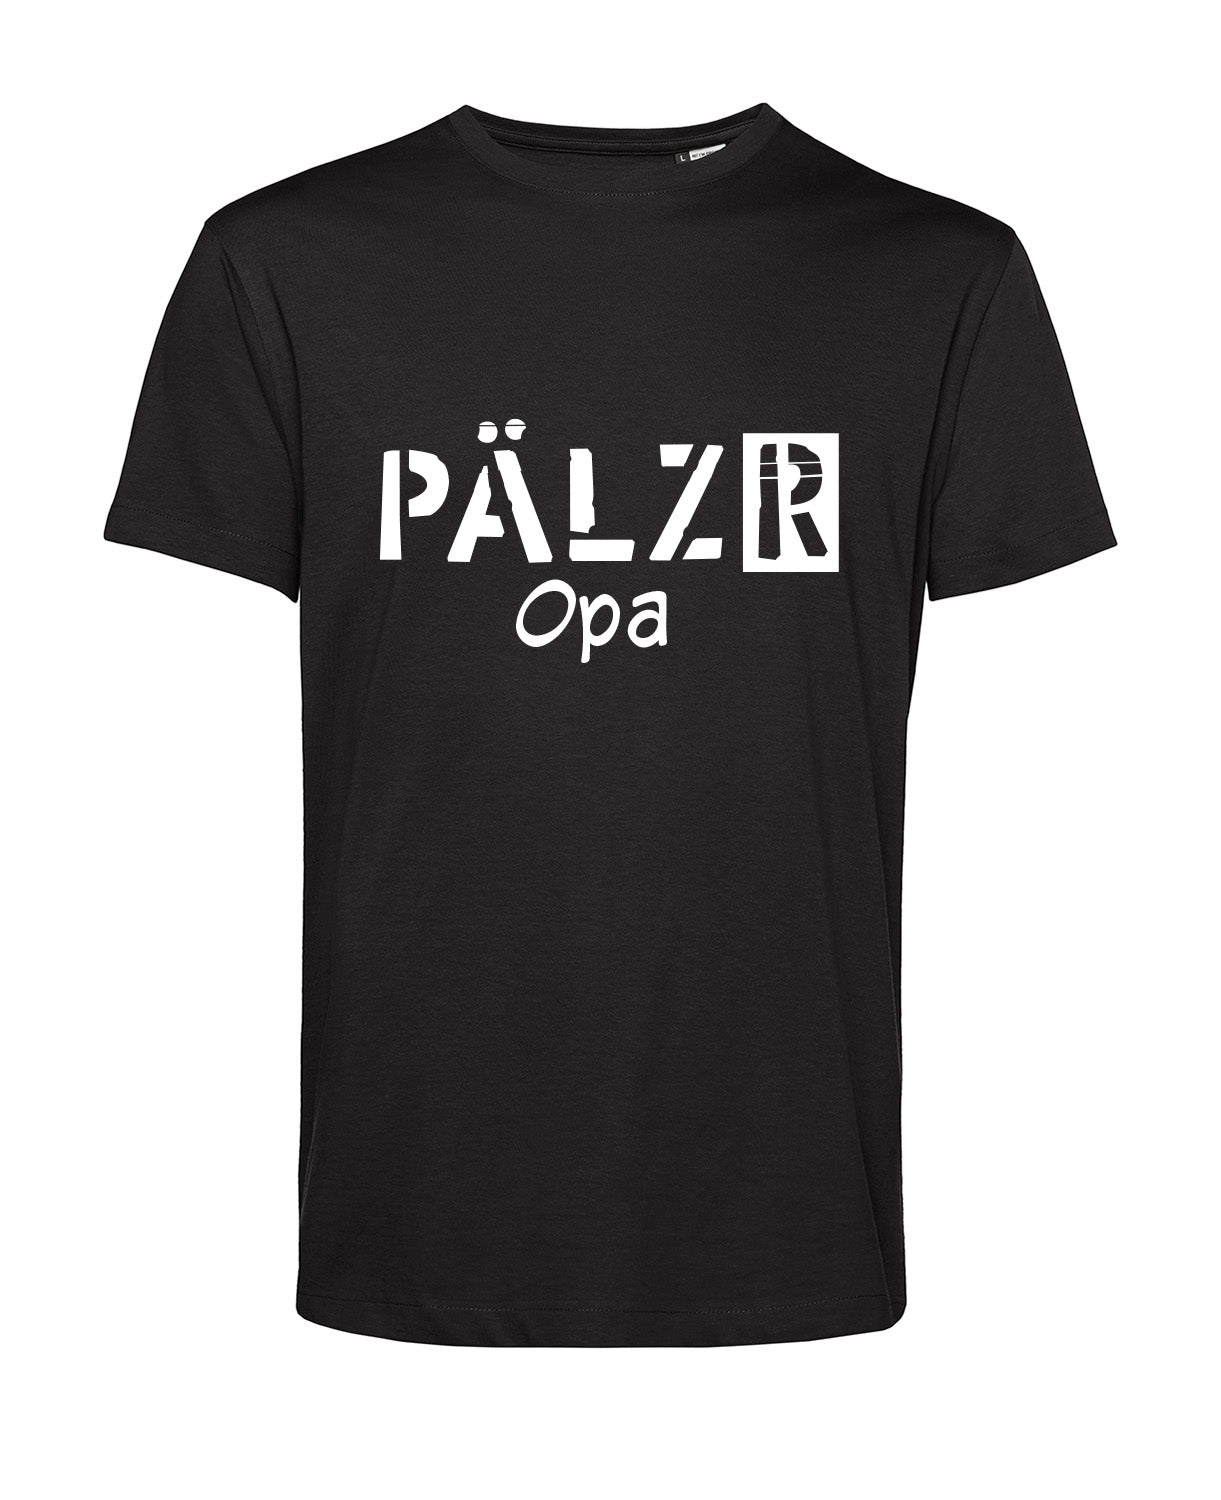 Männer T-Shirt | PÄLZR Opa | schwarz | Logo weiss